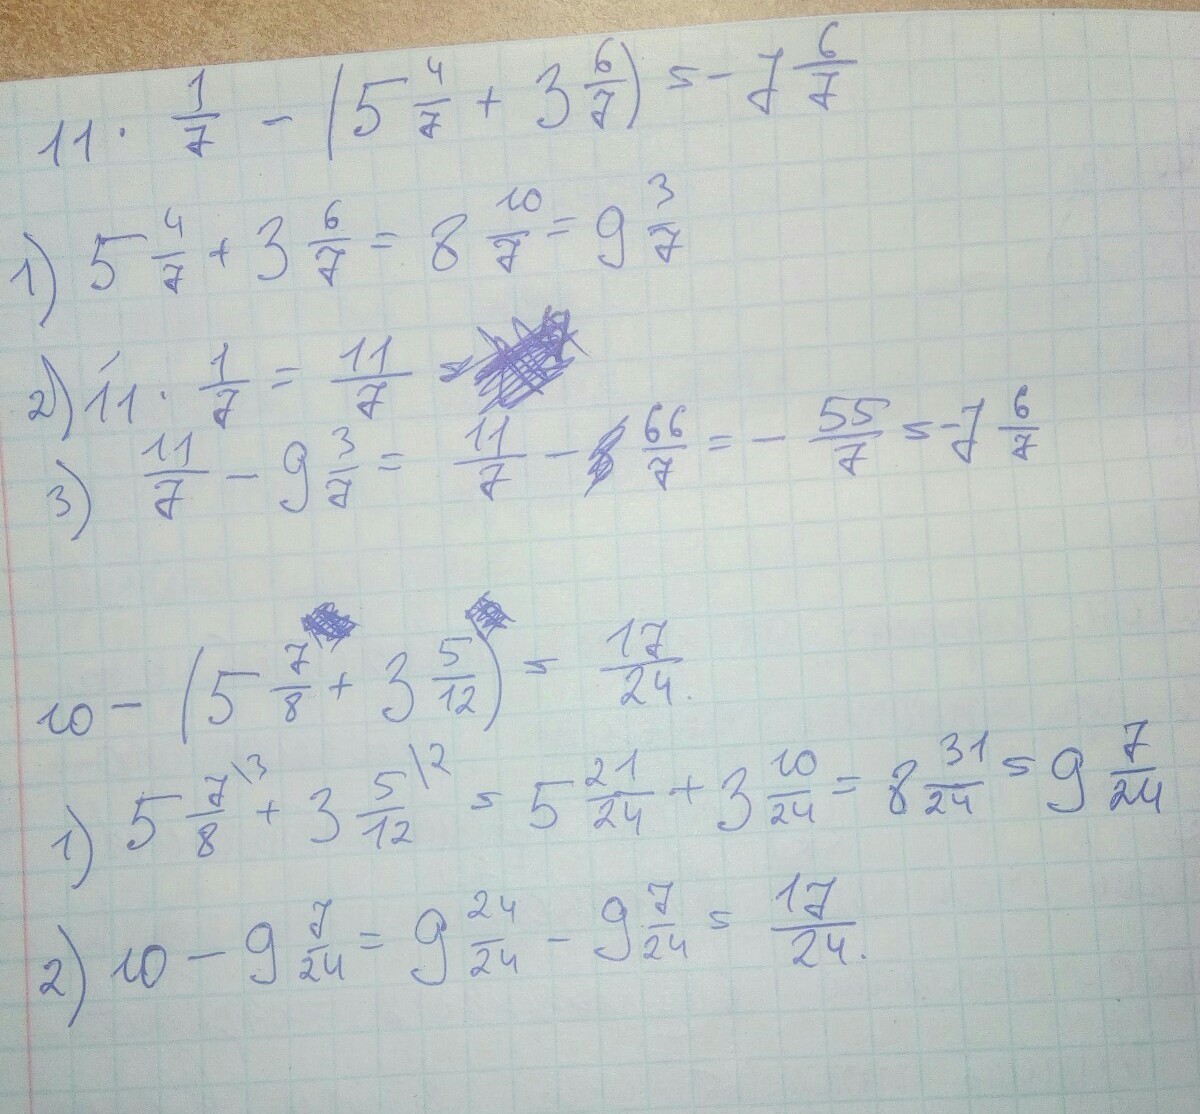 Решить пример 3 3 6 2. Пример 2 5/6 - (1 1/3-1/2). Решение 1 1/2+1/3*6/11. 1:7 Решение. 2 2/5 И 4 3/7 решение.